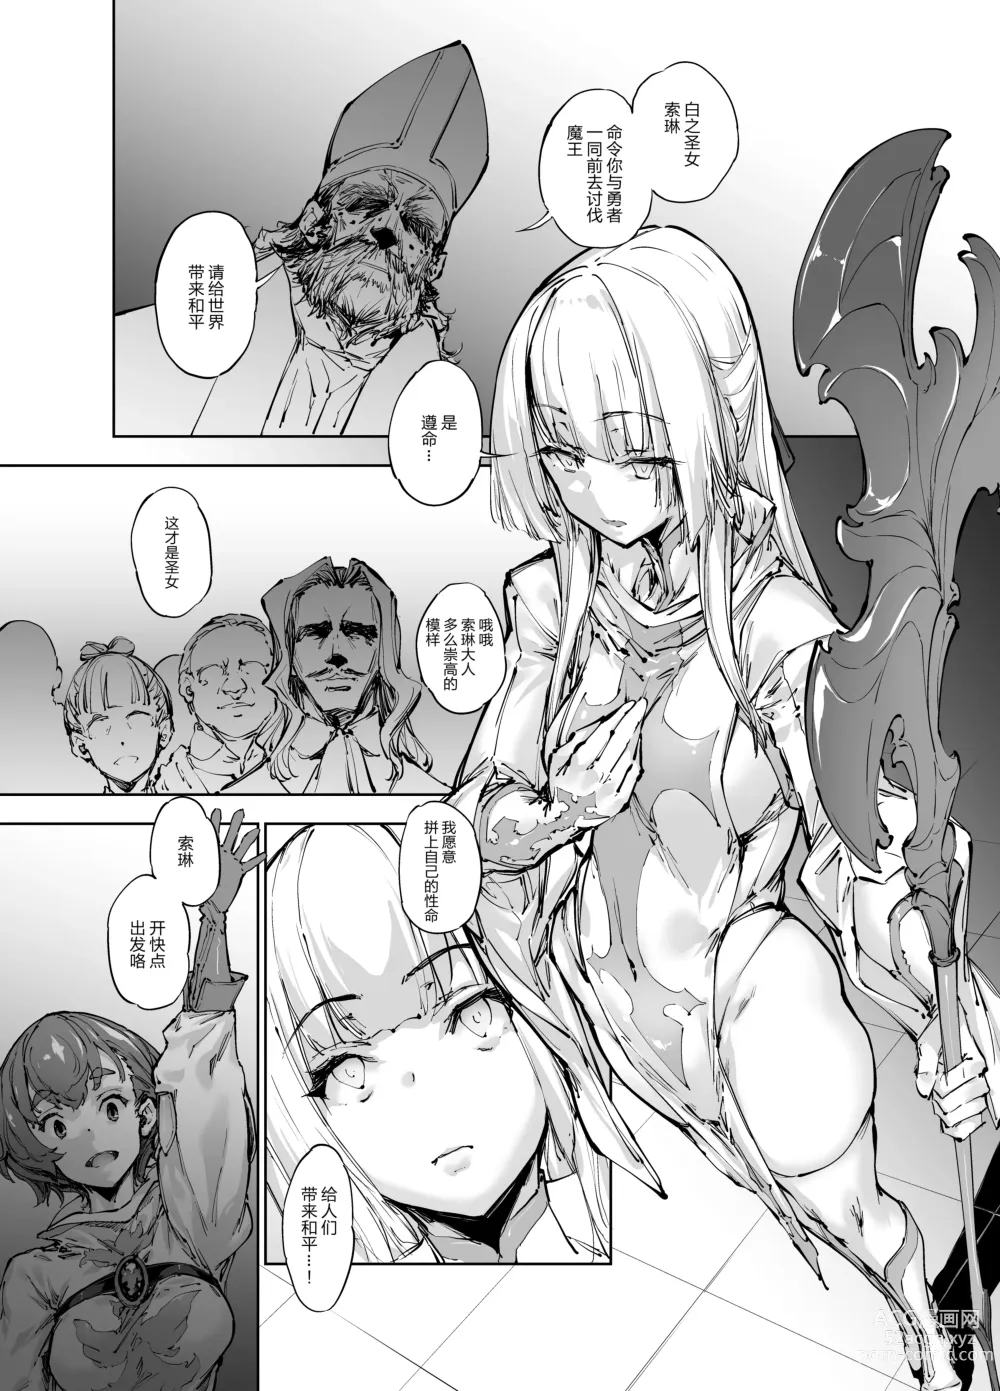 Page 2 of manga 僧侶・ソレーヌ